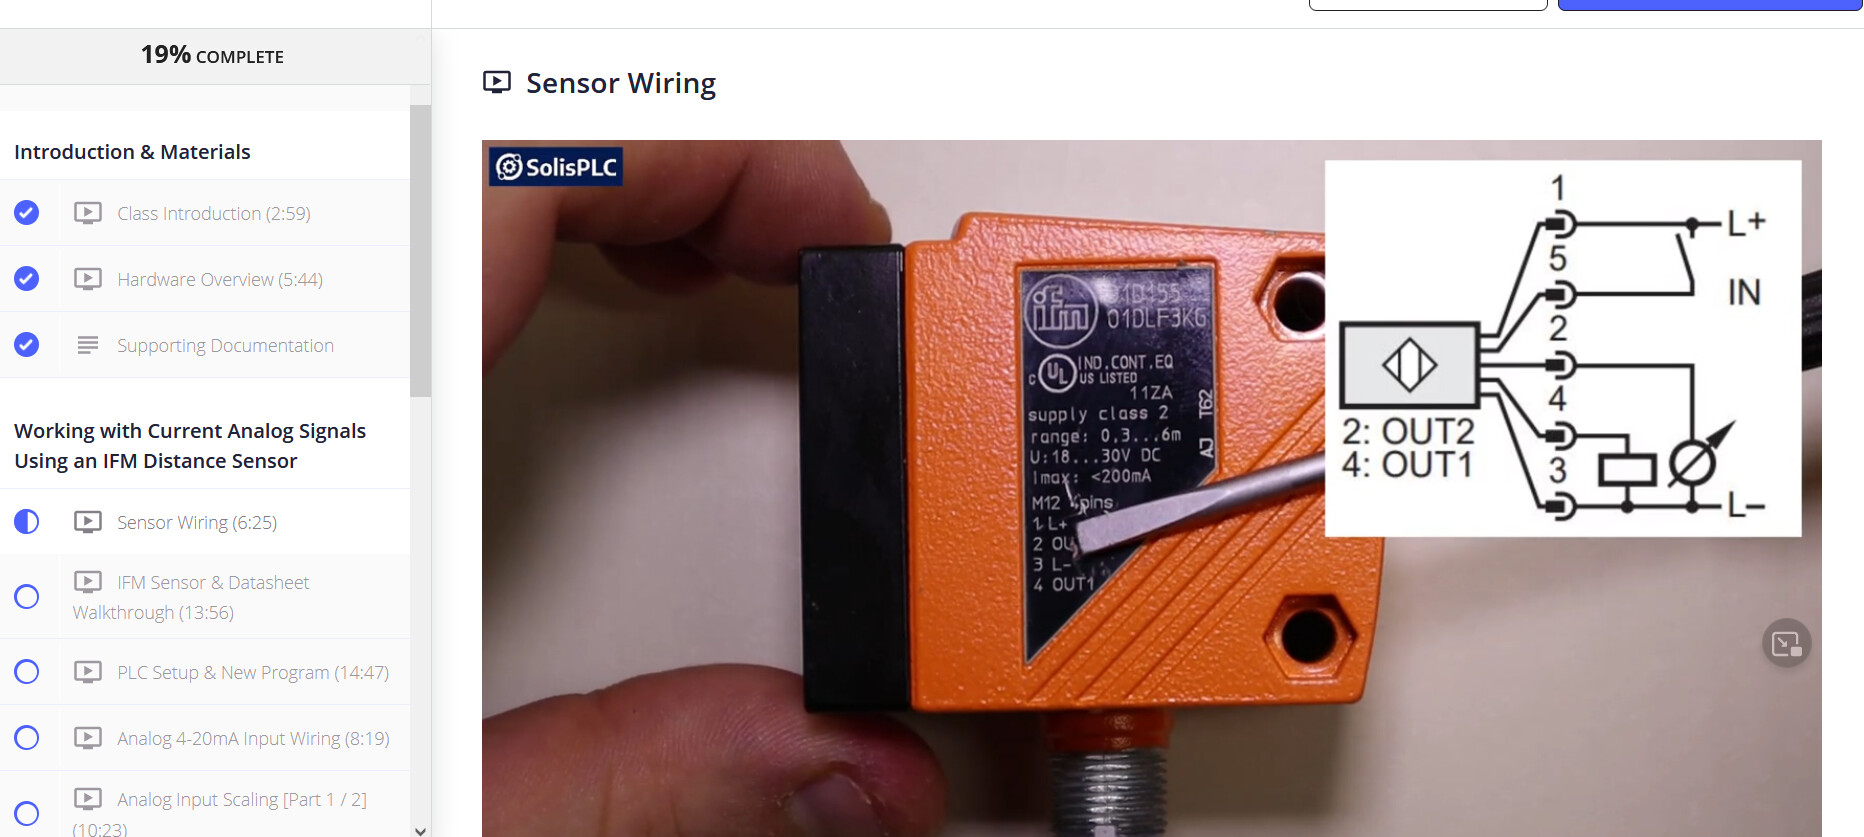 sensor wiring.PNG